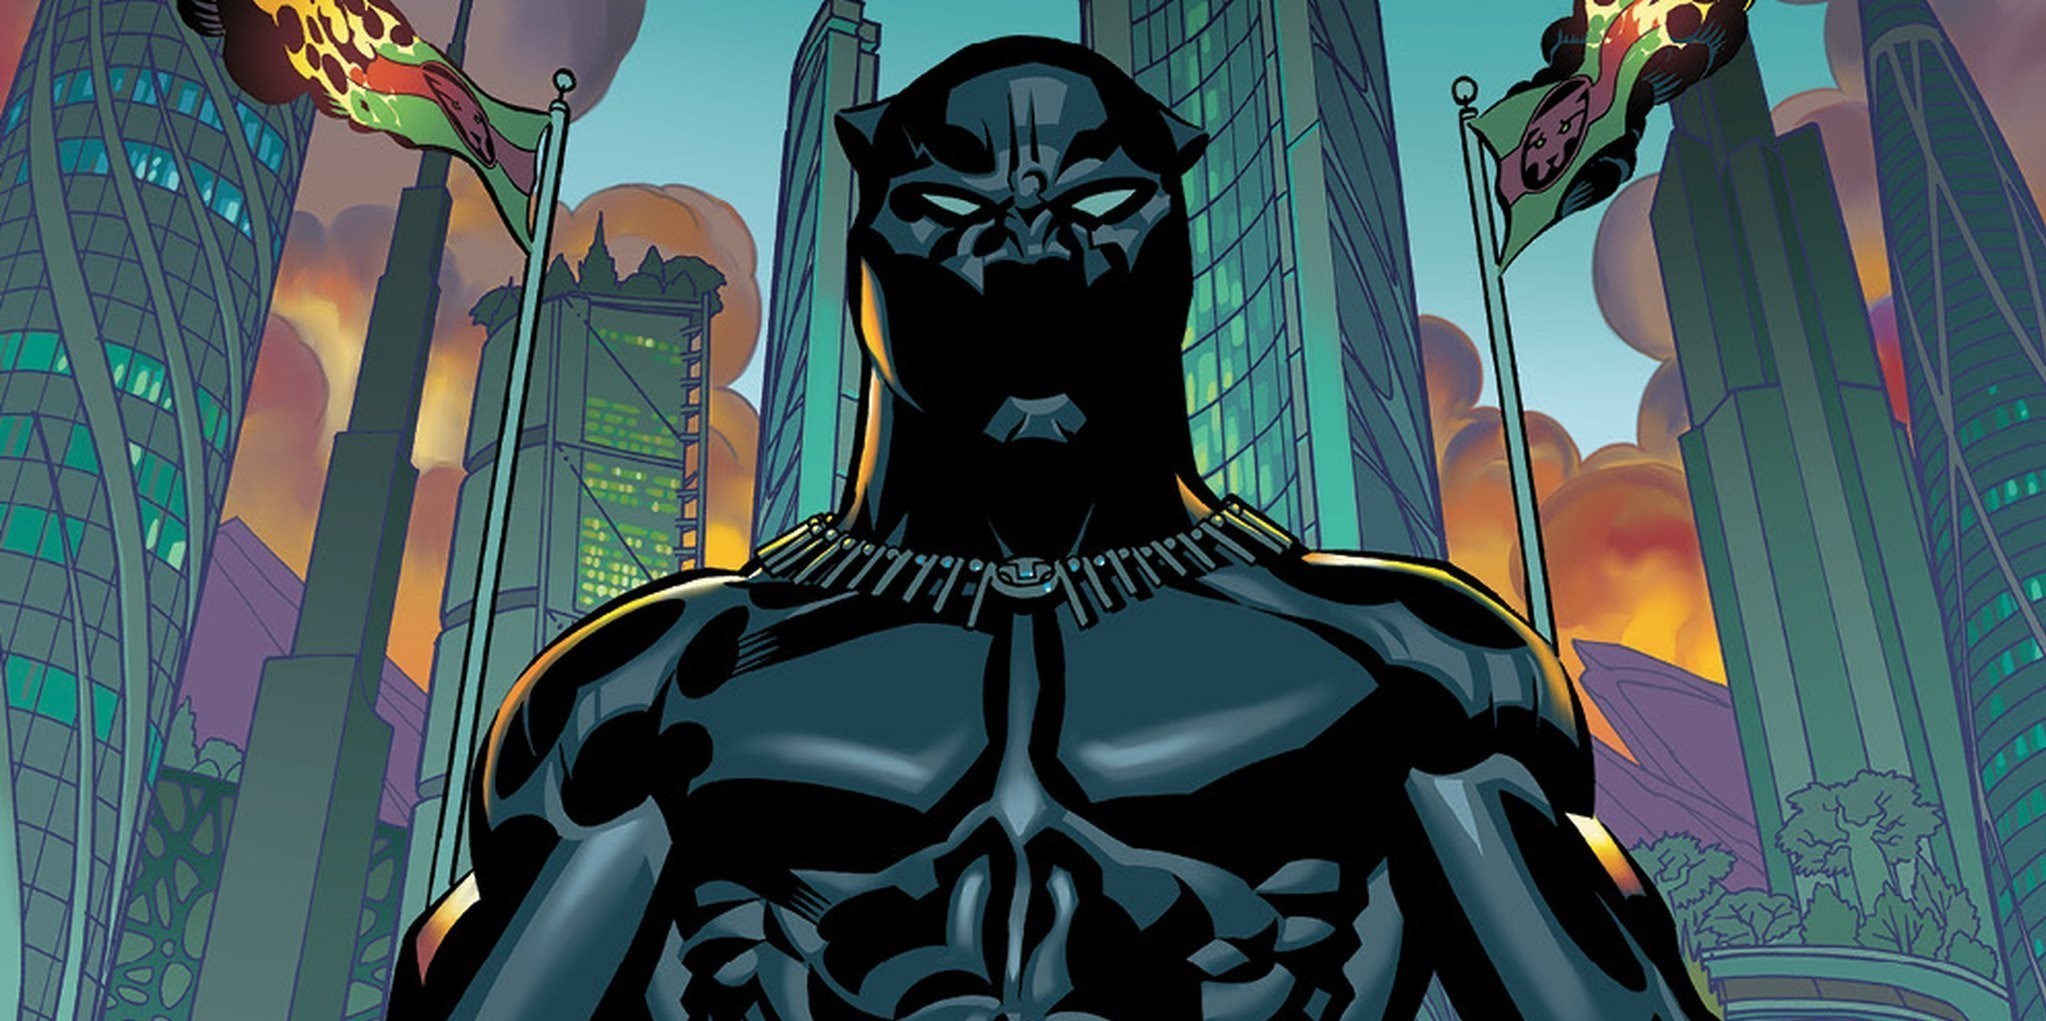 نقد و رمزگشایی فیلم Black Panther 2018 (پلنگ سیاه)